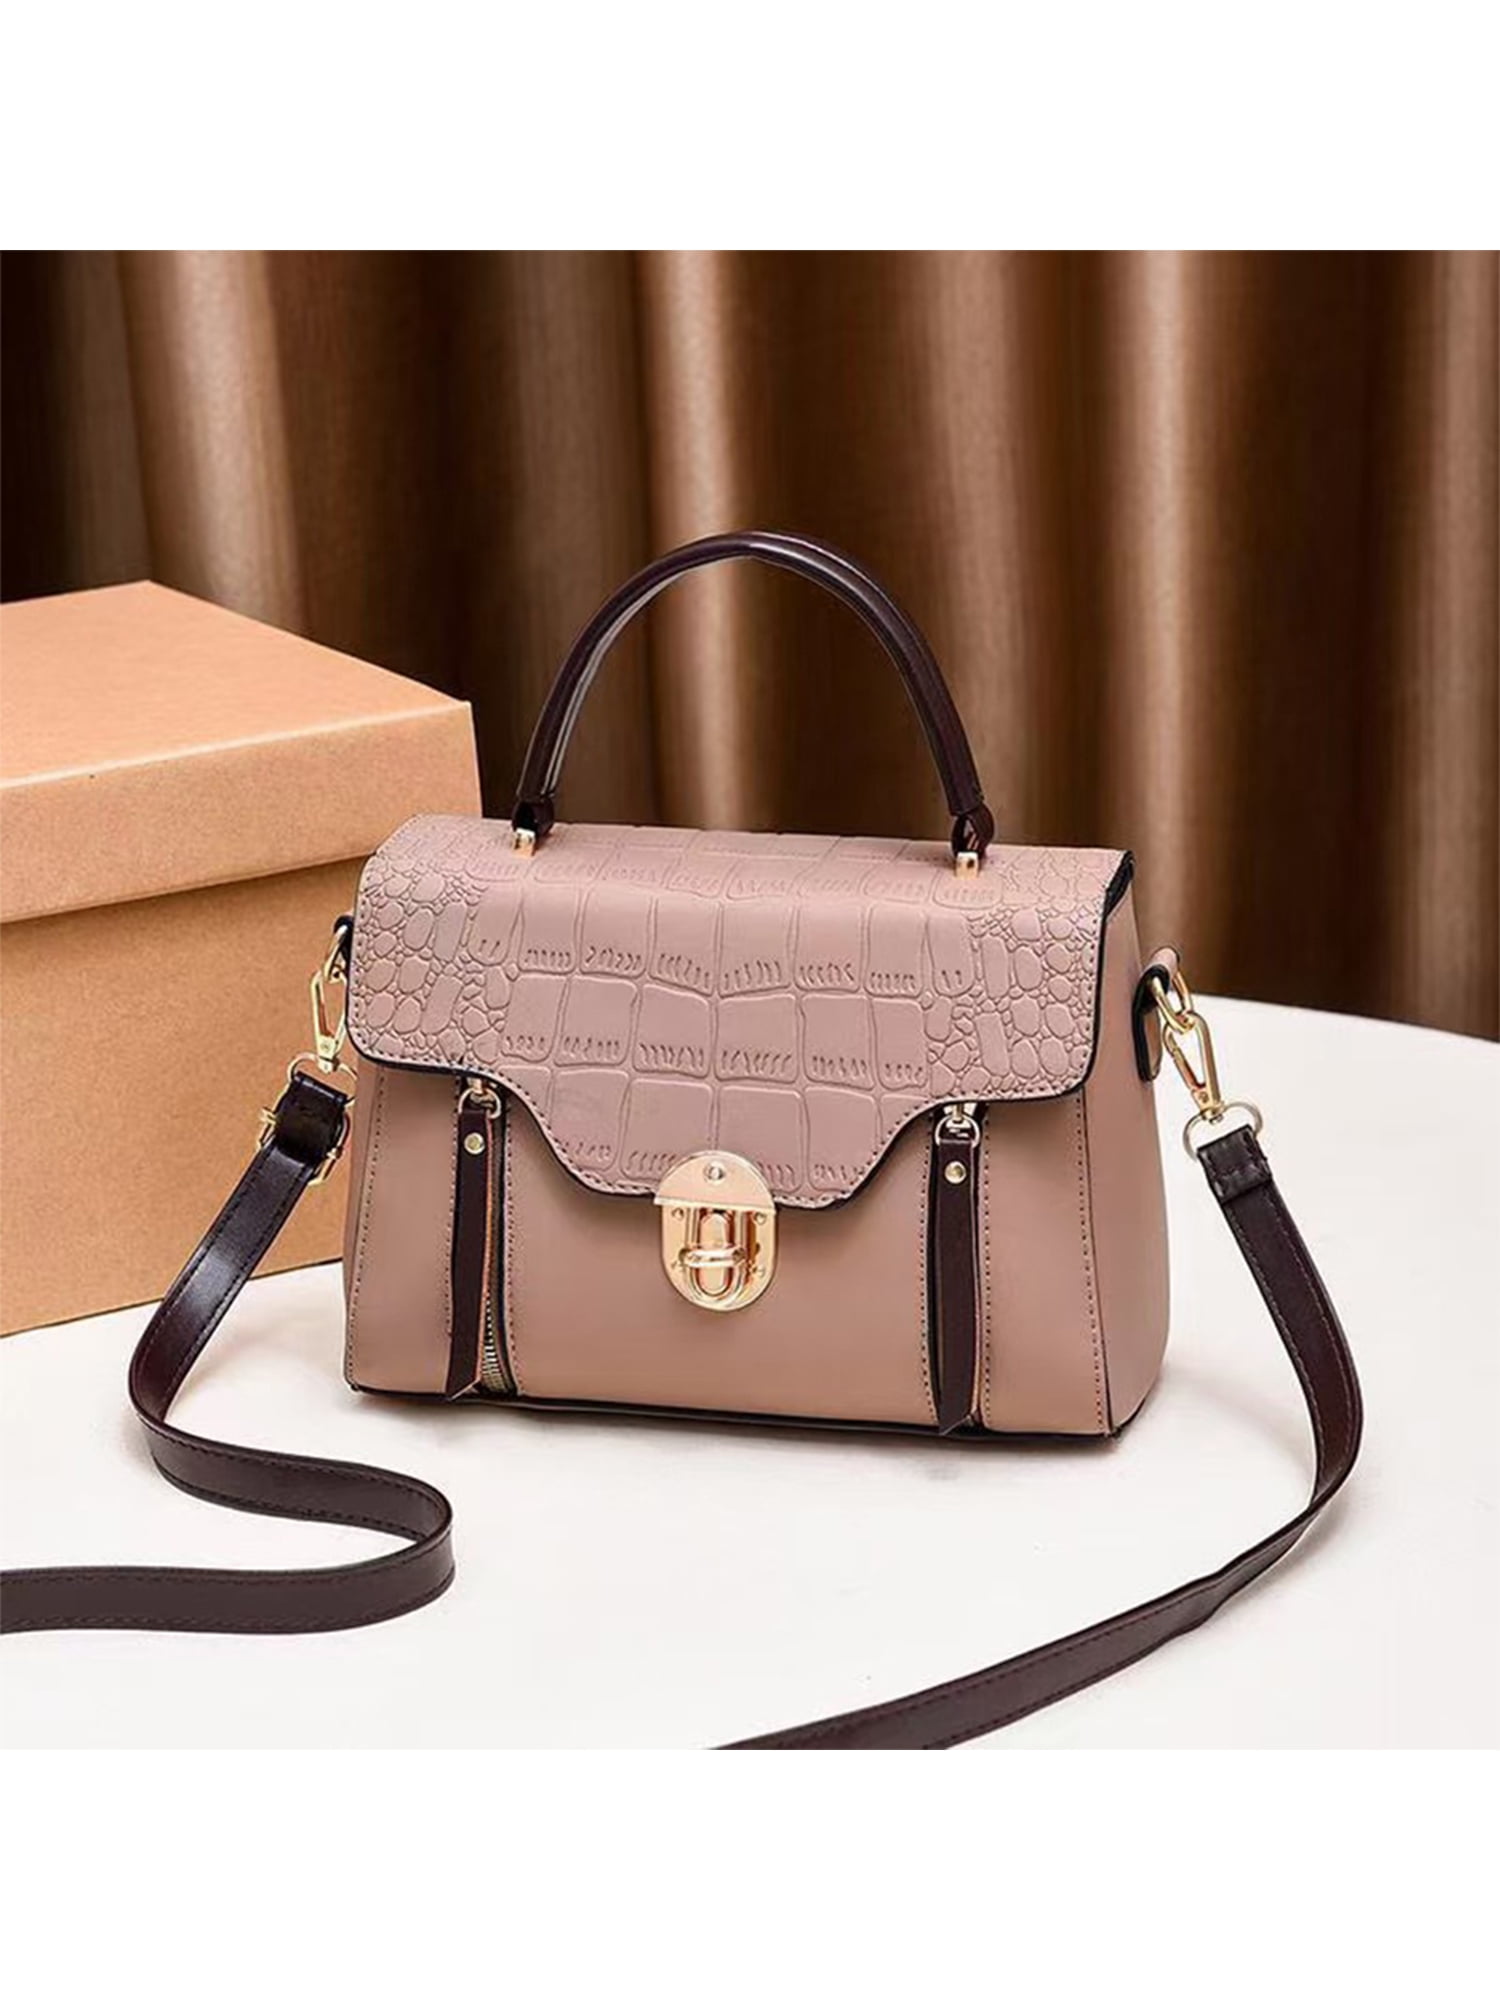 CANNA LAURA Crossbody Bag with Zipper Pocket Shoulder Strap Purse Top  Zipper Handbag for Women Ladies bag